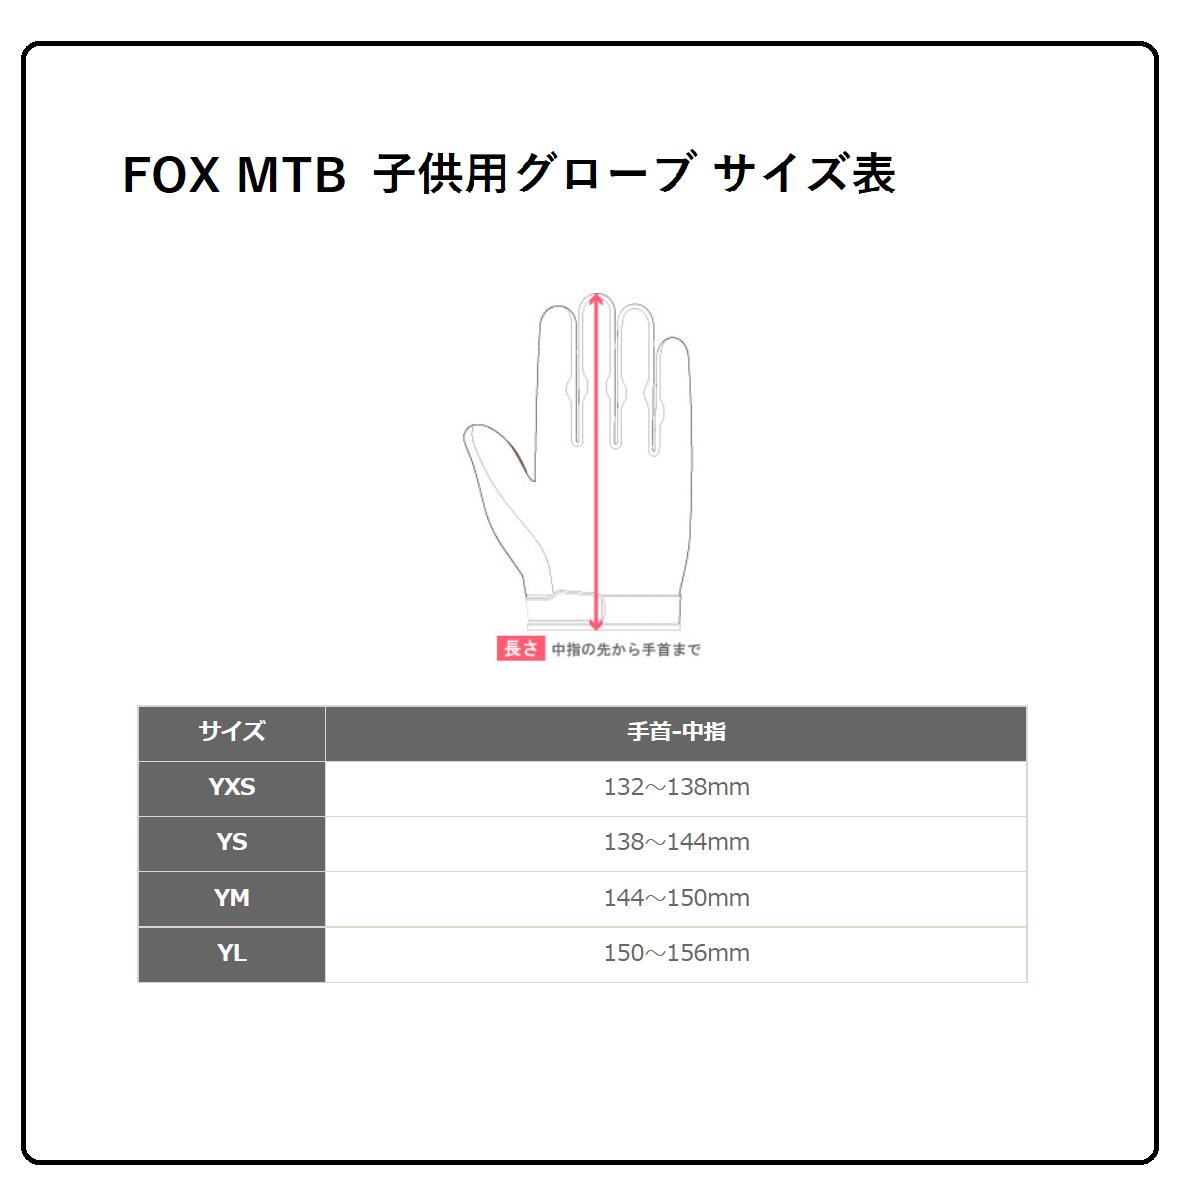 FOX MTB レンジャーグローブ 子供用 YMサイズ フローレッド